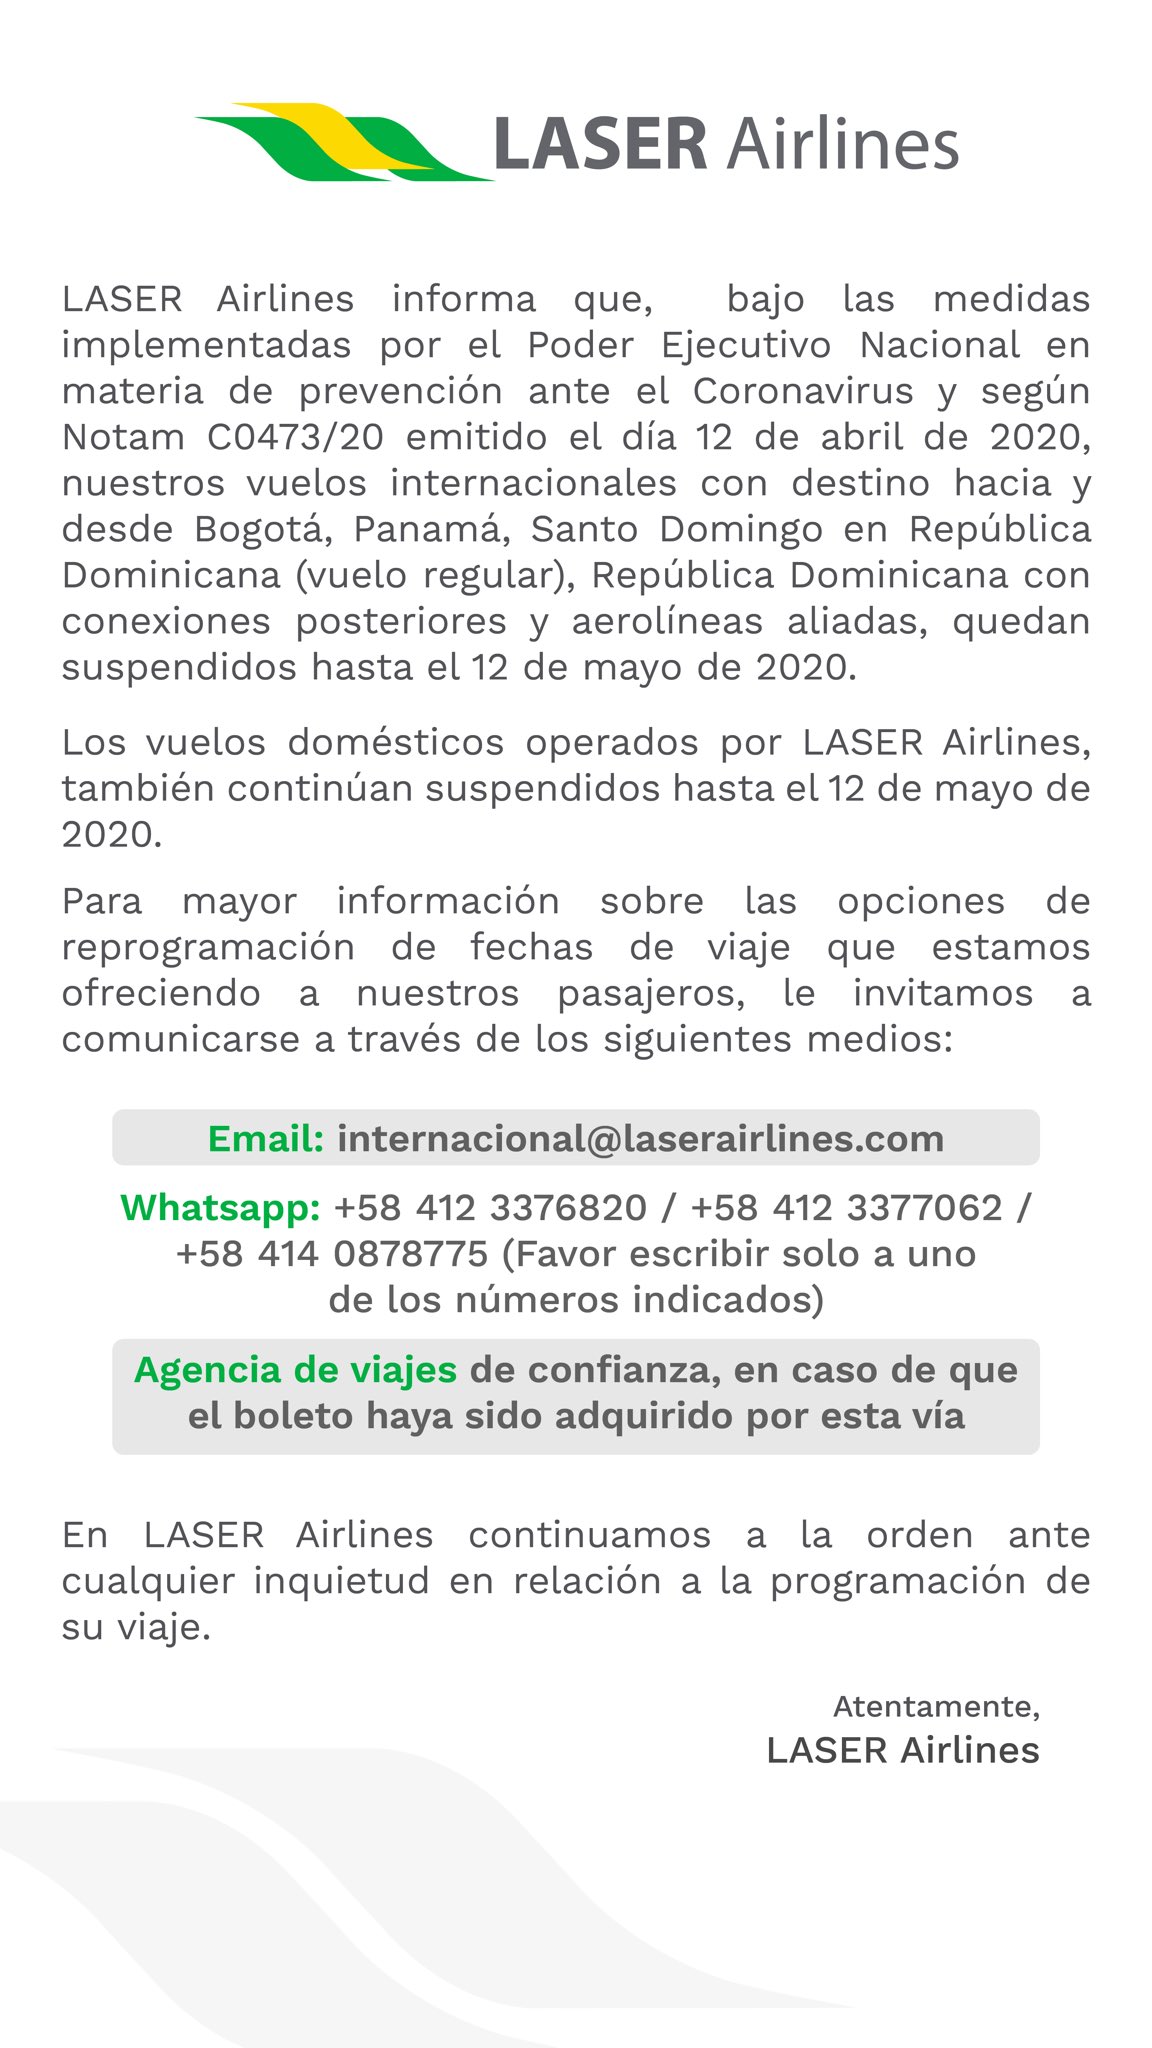 Laser Airlines on Twitter: "Estimados pasajeros, compartimos información de interés relación a nuestros vuelos nacionales e internacionales. Para mayor información sobre reprogramación su fecha de viaje, le invitamos a